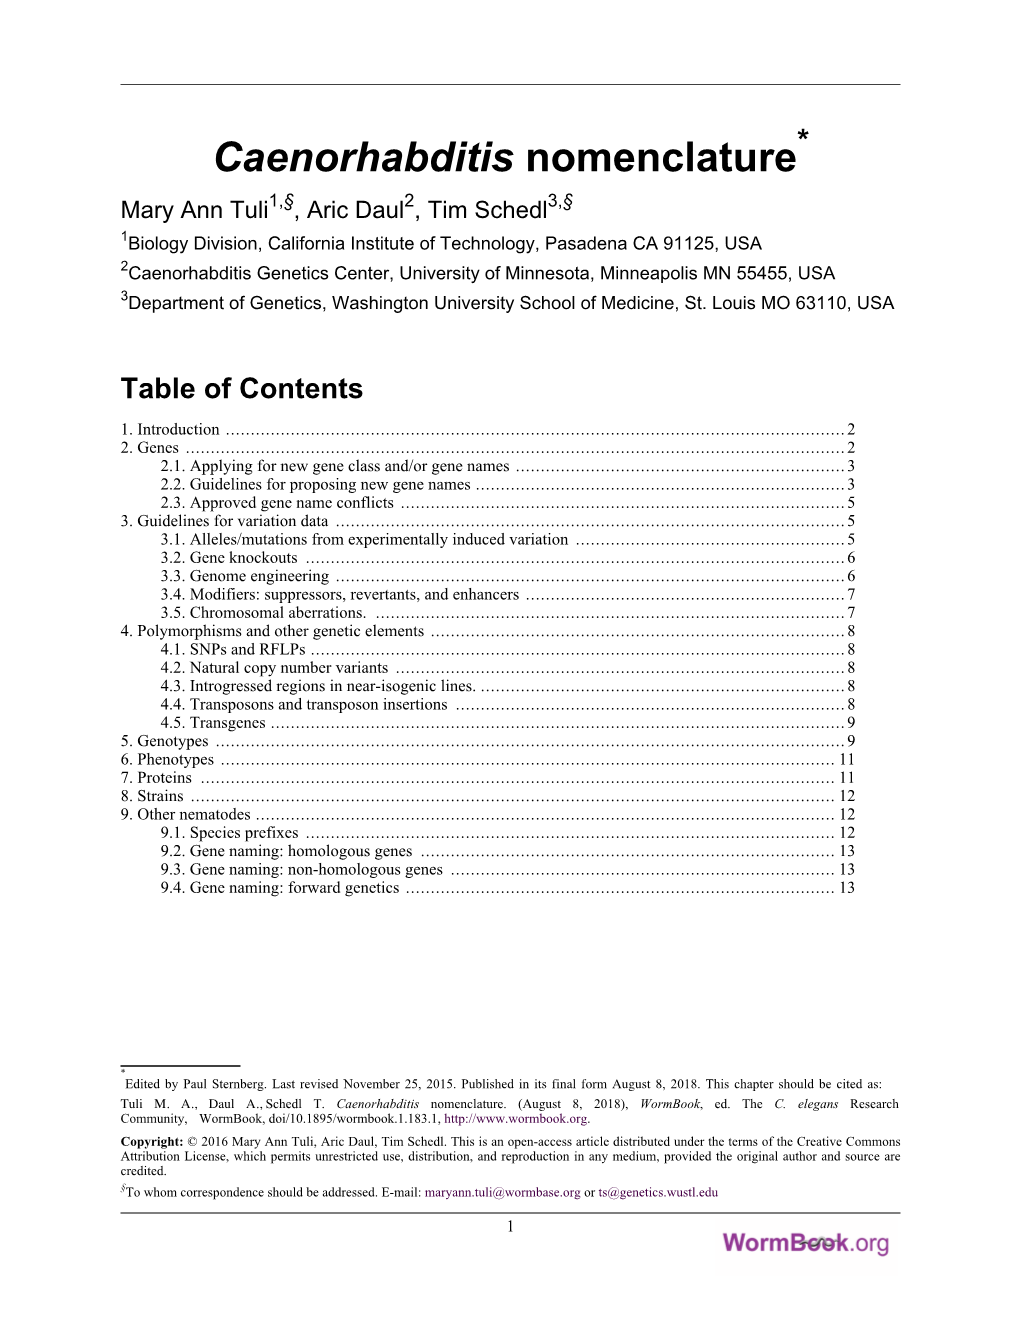 Caenorhabditis Nomenclature